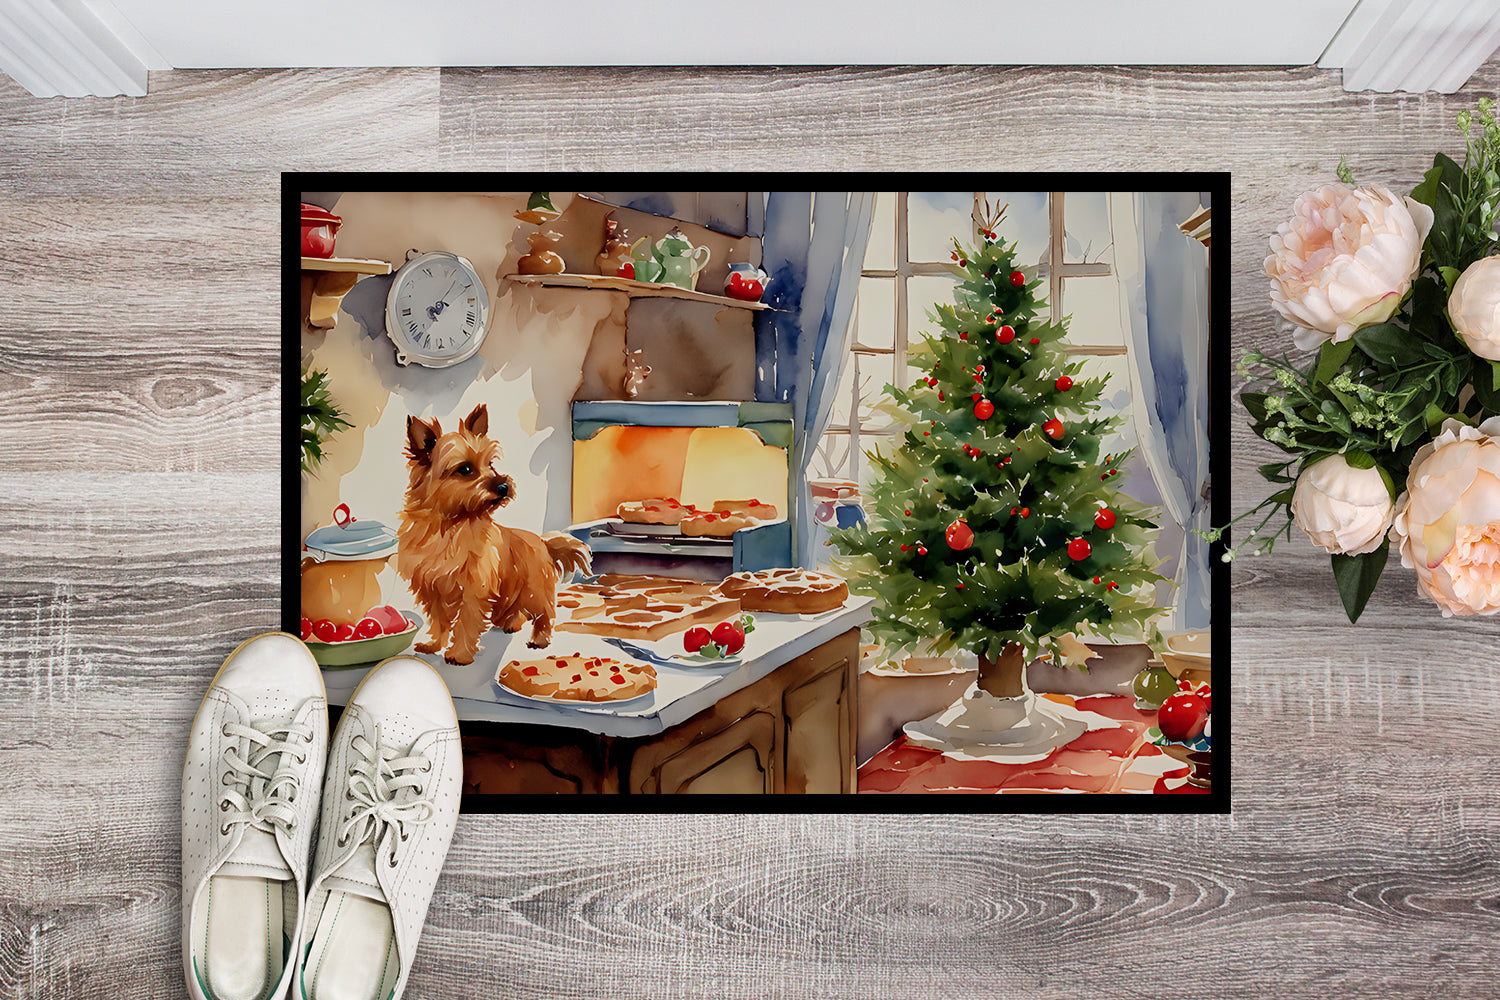 Buy this Norwich Terrier Christmas Cookies Doormat